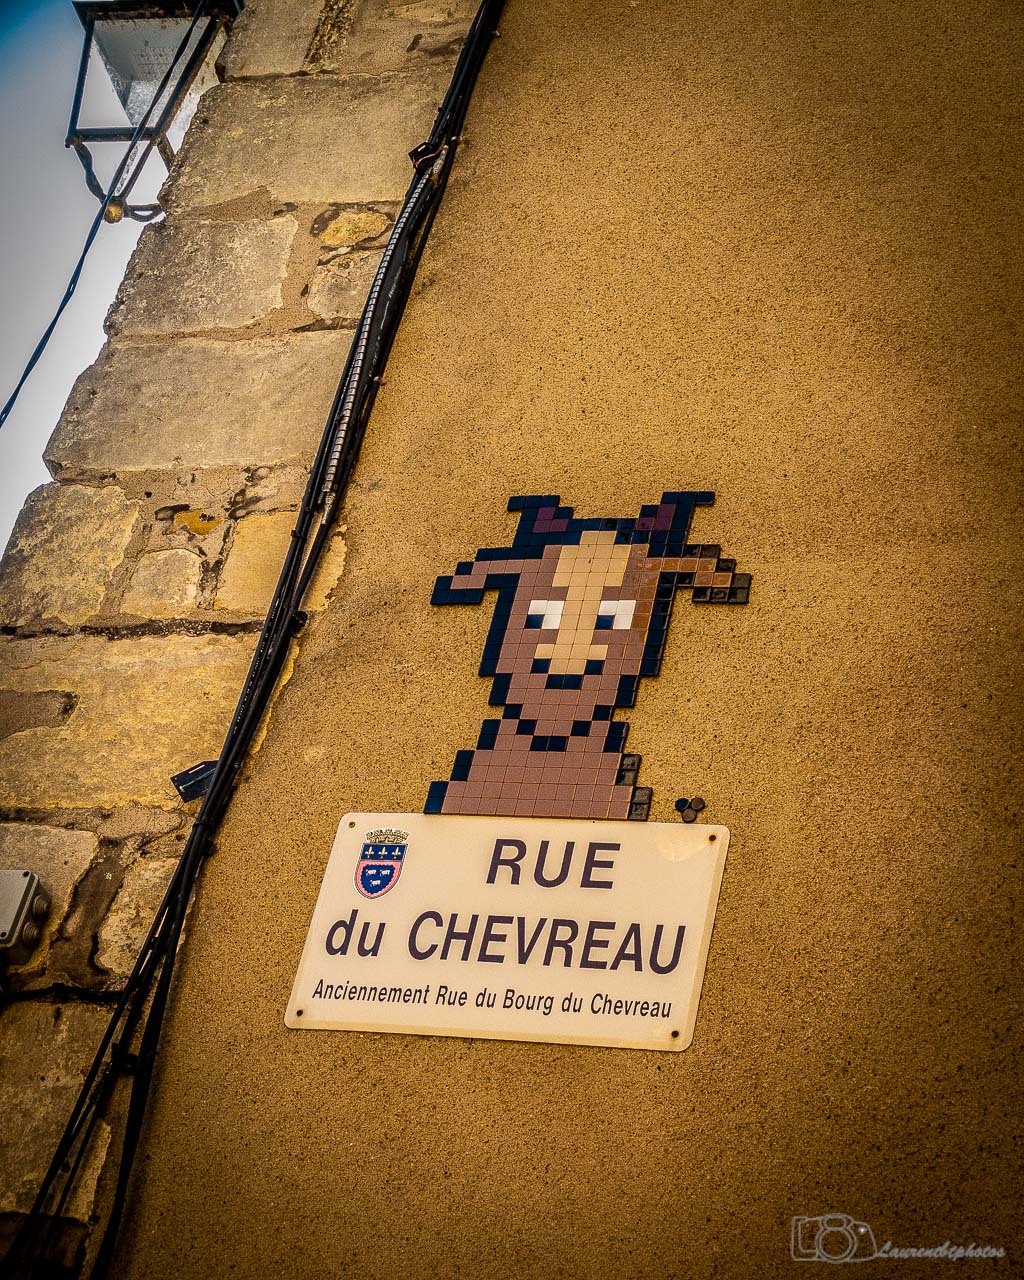 Mosaic 6242 Le chevreau de Mifamosa capturé par laurentbtphotos à Bourges France